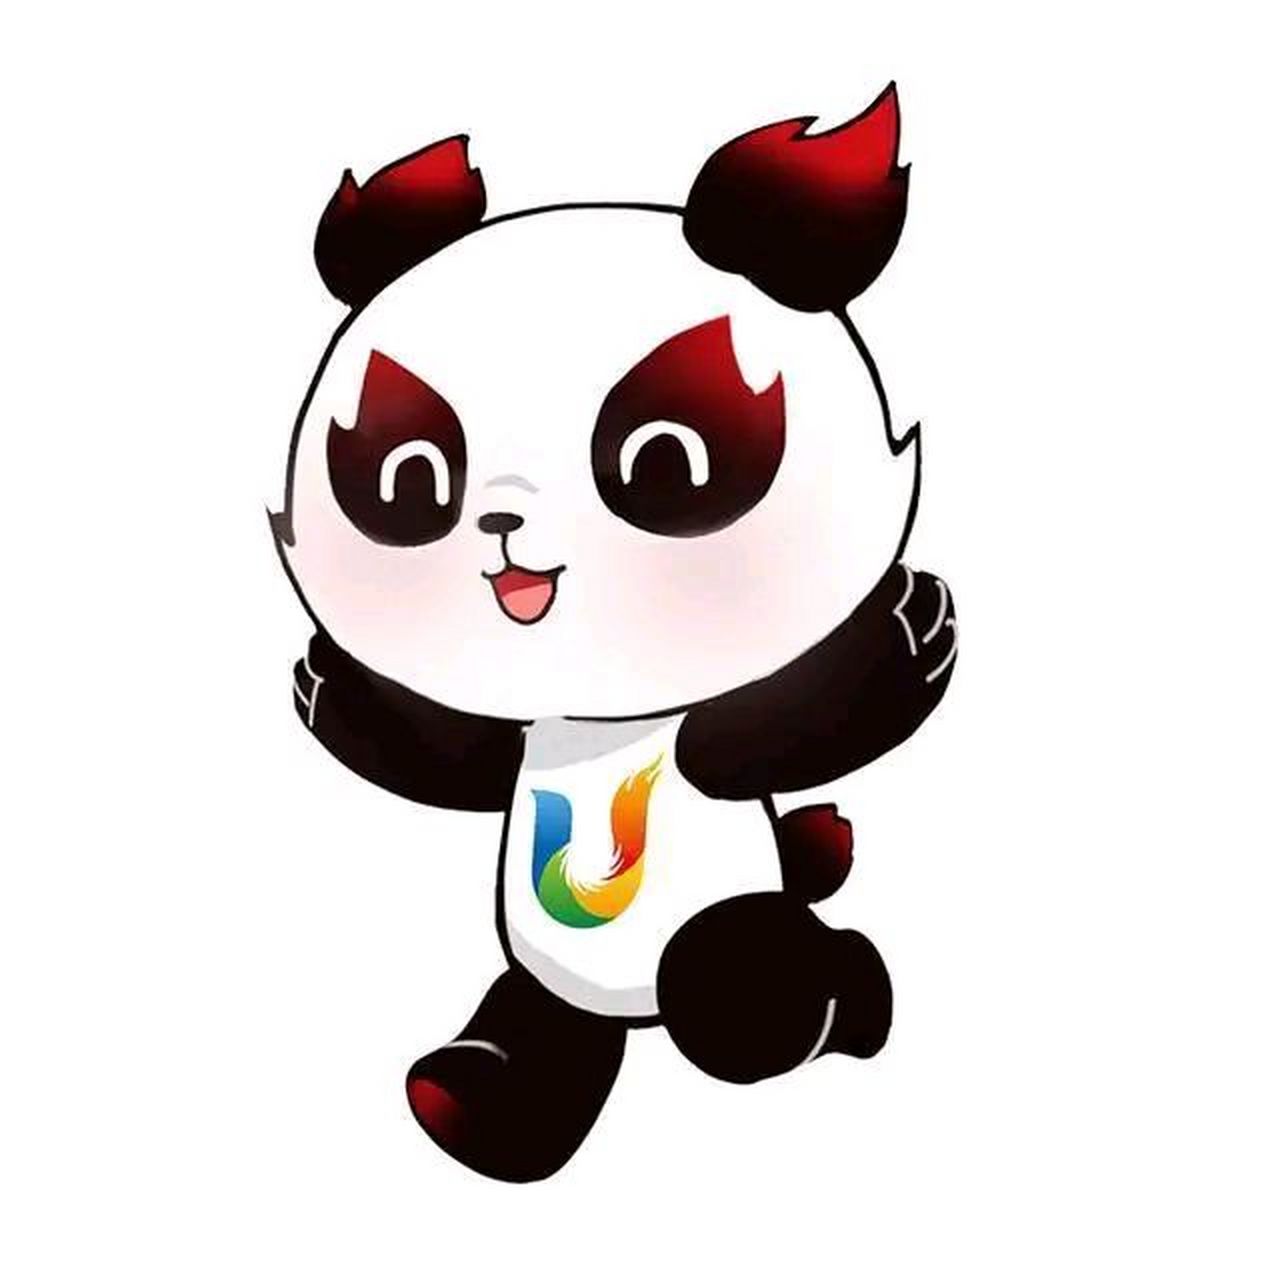 成都大运会开幕,在成都大运会吉祥物蓉宝的带领下,熊猫代表团来了